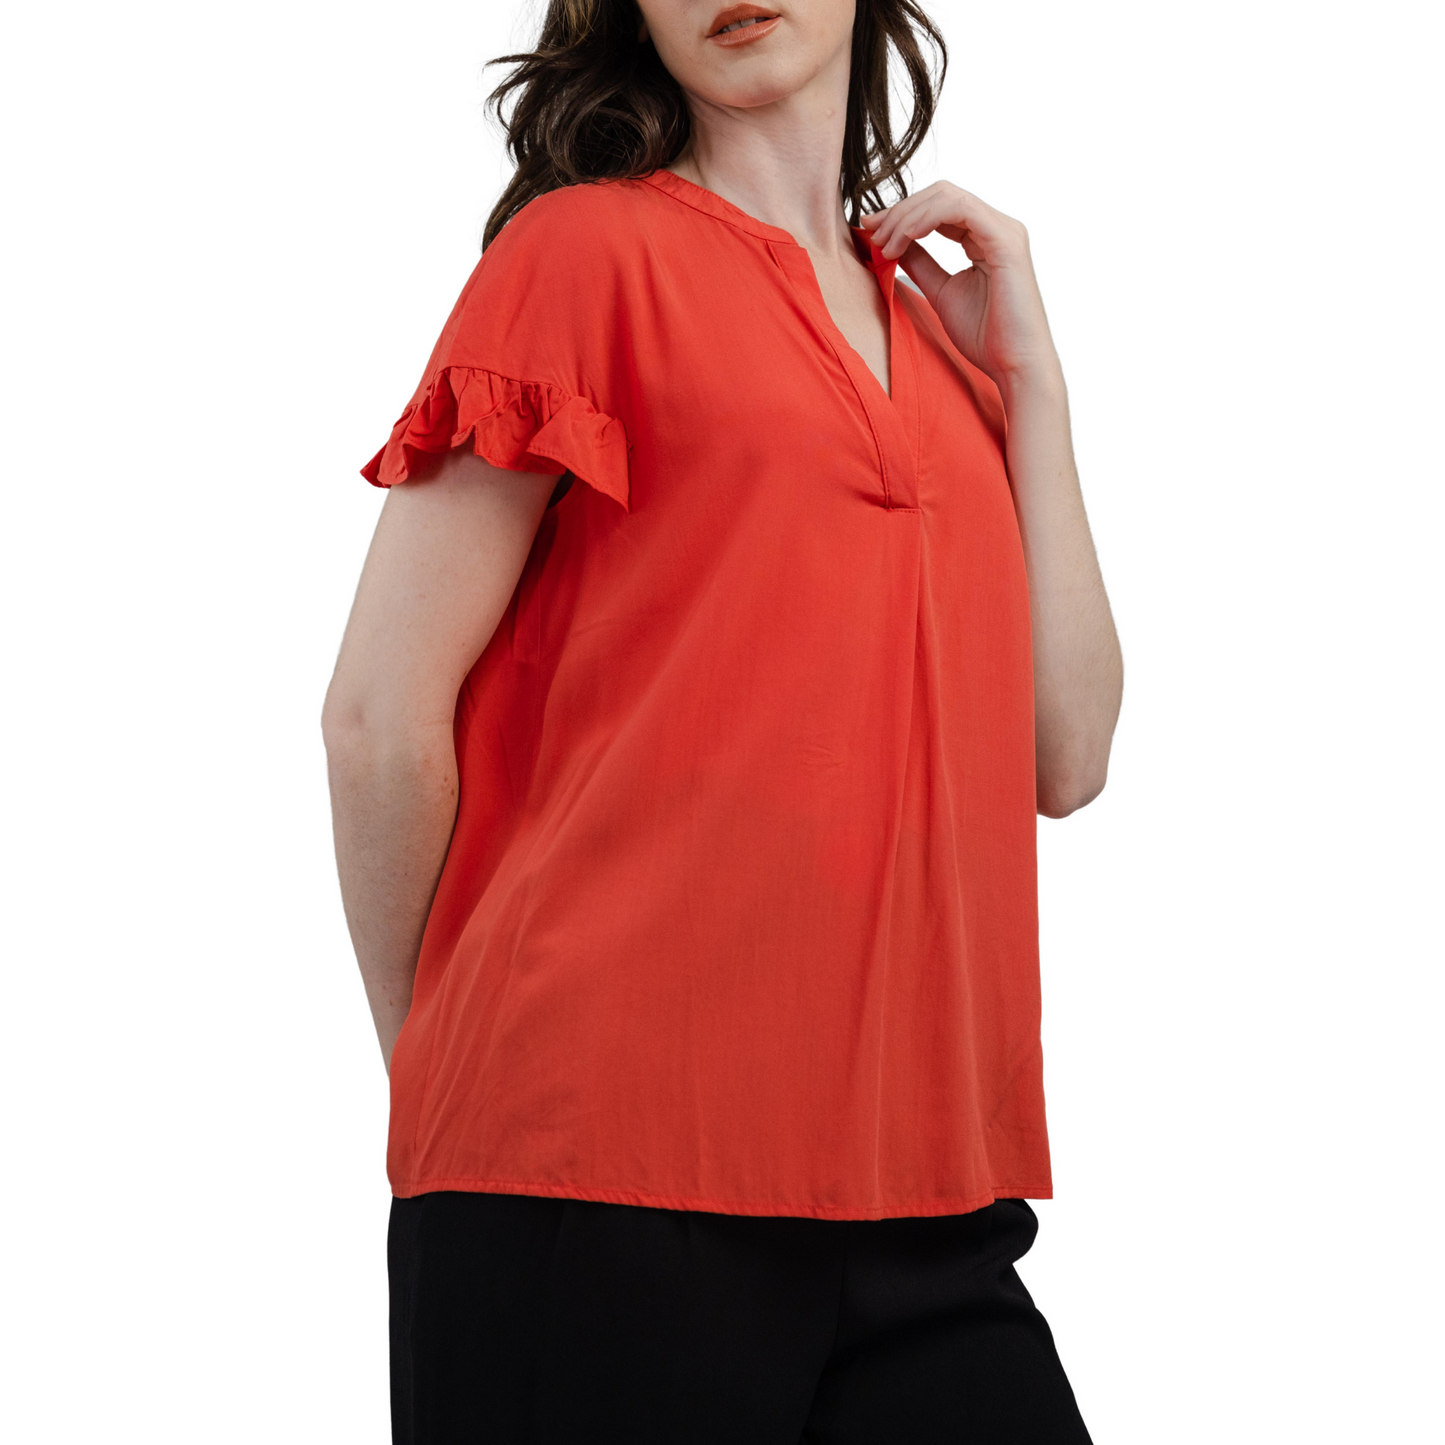 Women's V-Neck Ruffle Elegant Short Sleeve Blouses For Office Business Casual